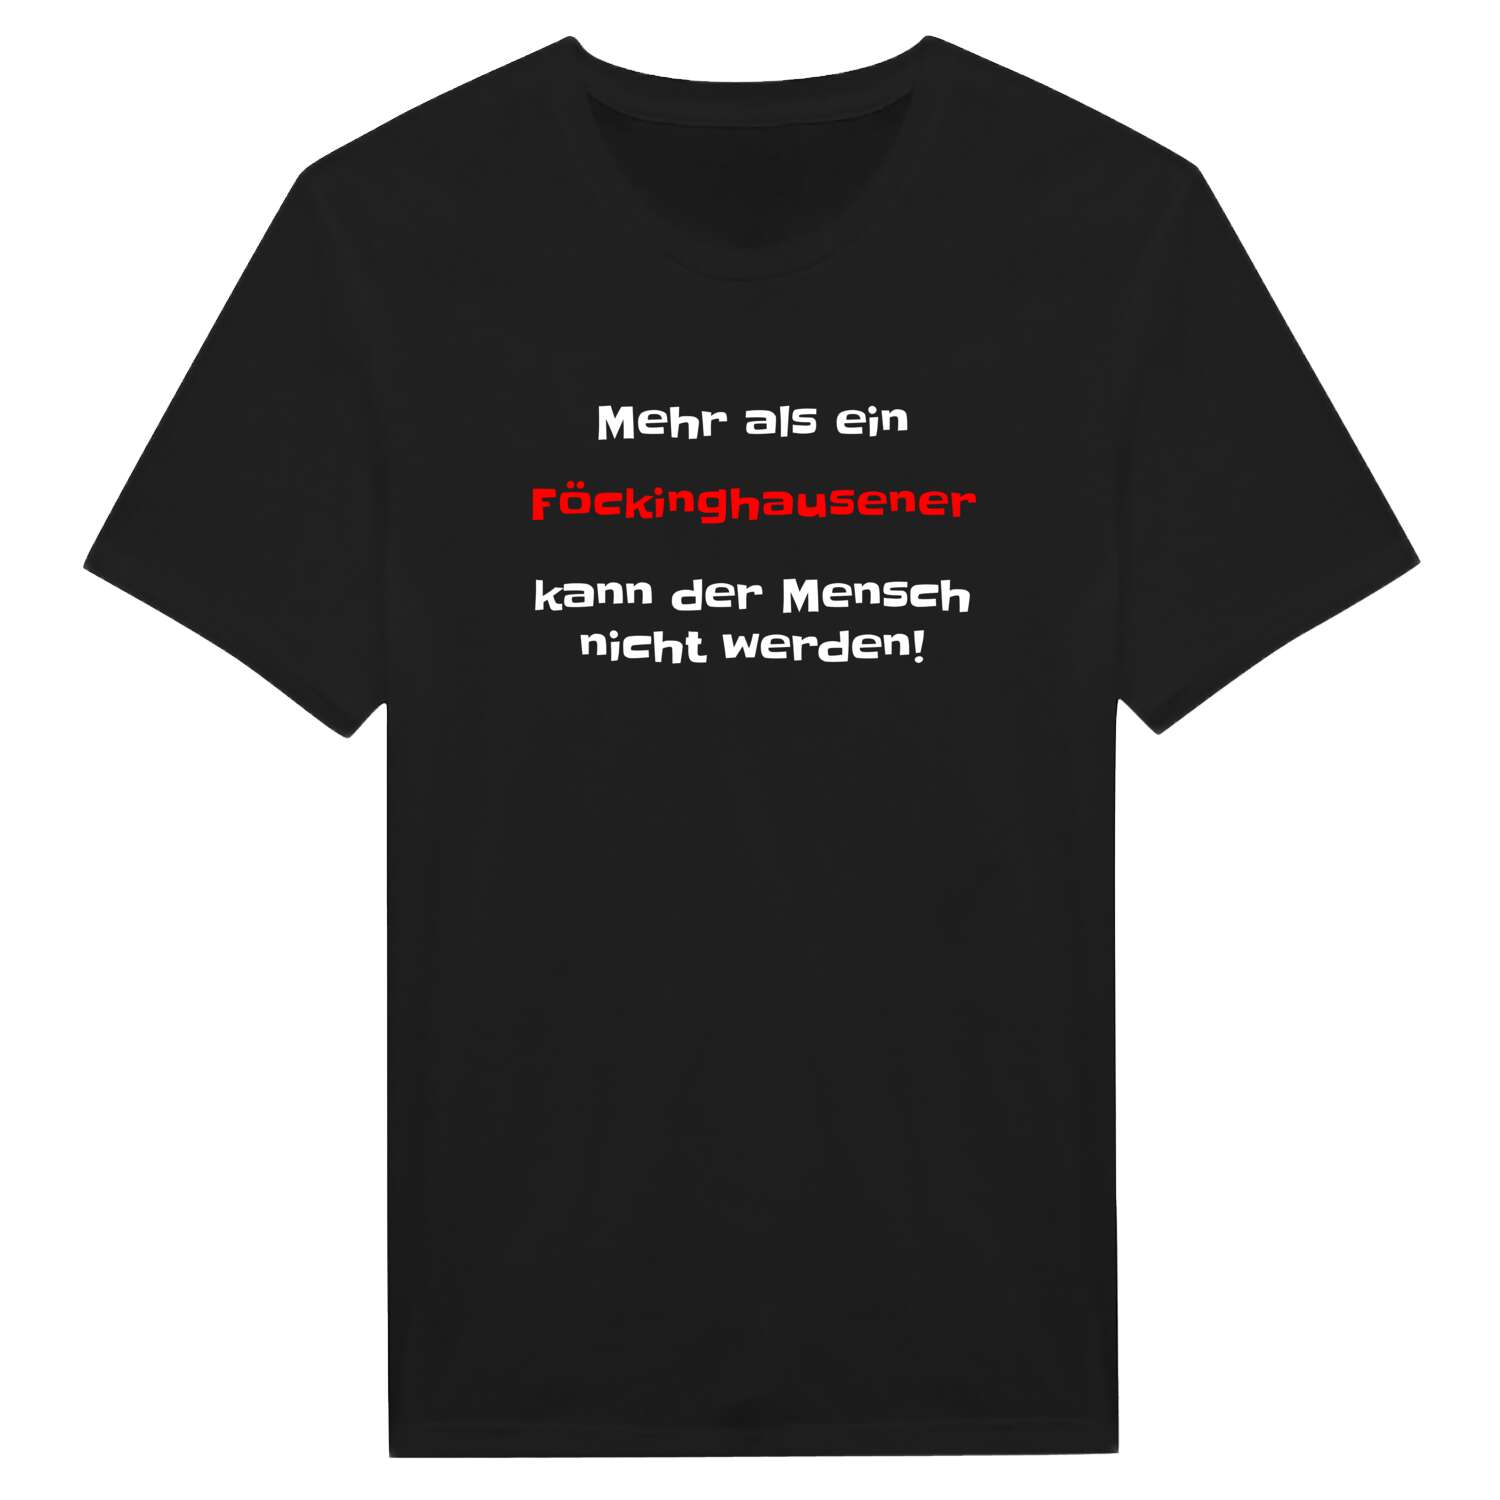 Föckinghausen T-Shirt »Mehr als ein«